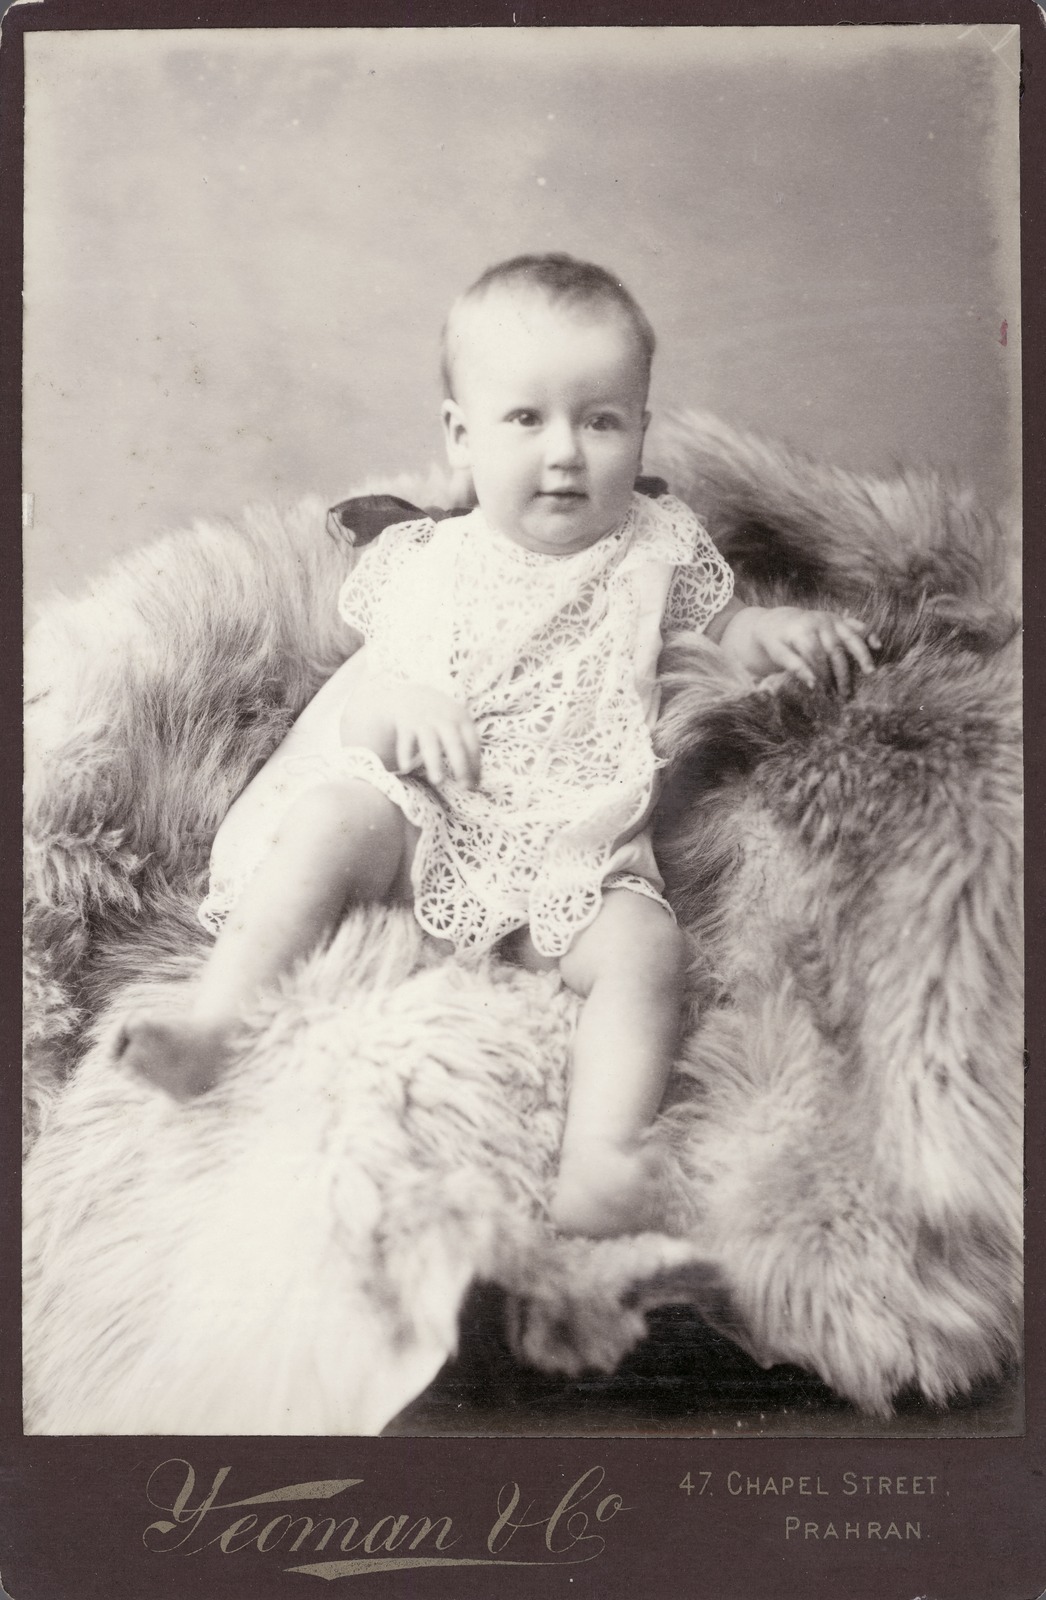 Infant sitting on fur rug